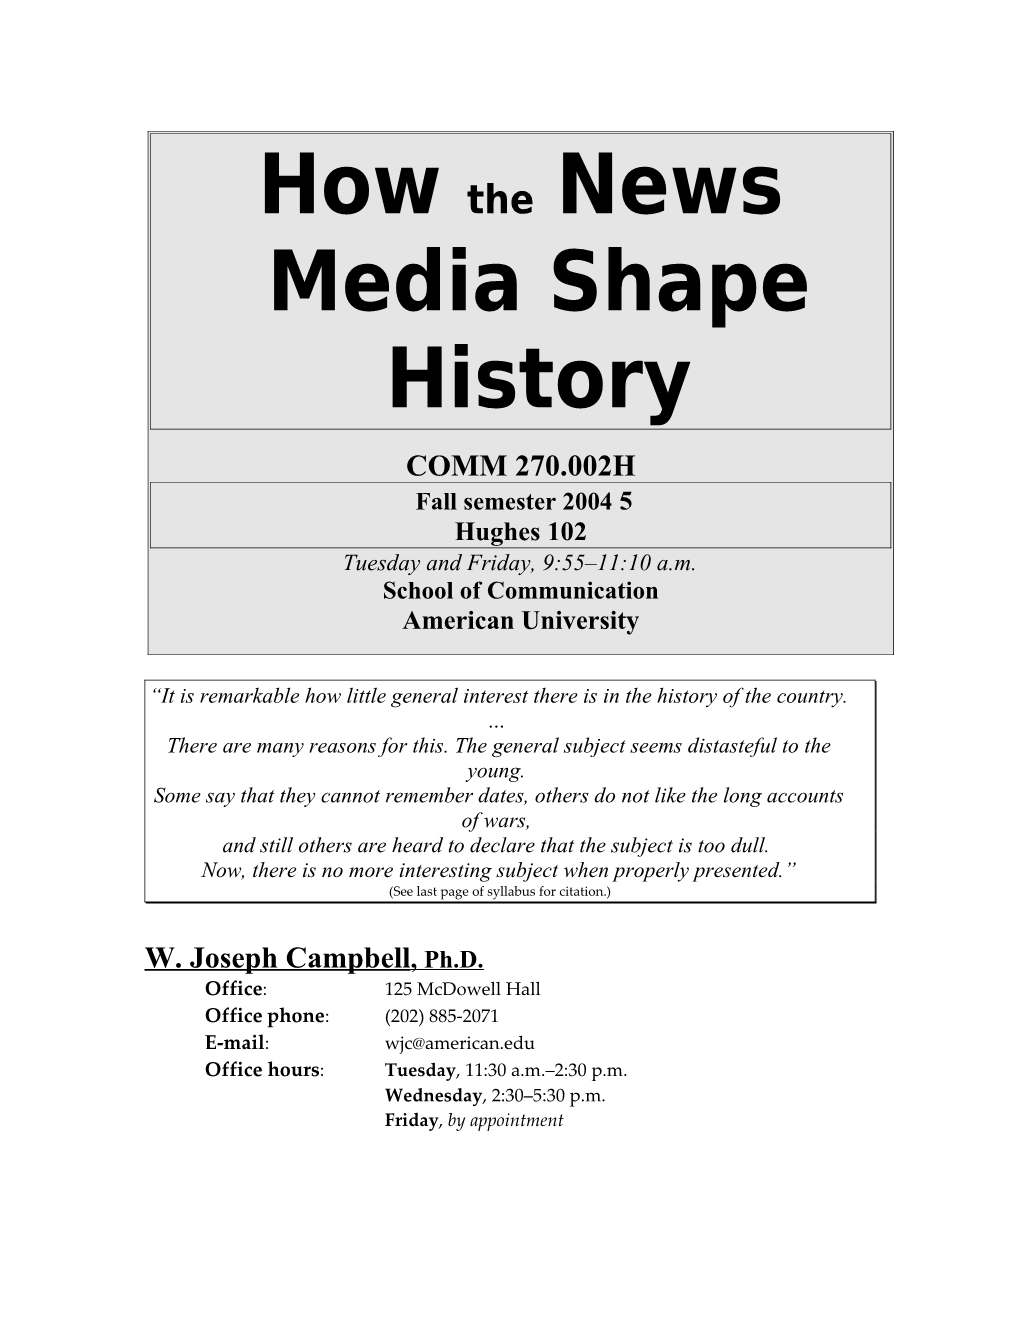 How the News Media Shape History